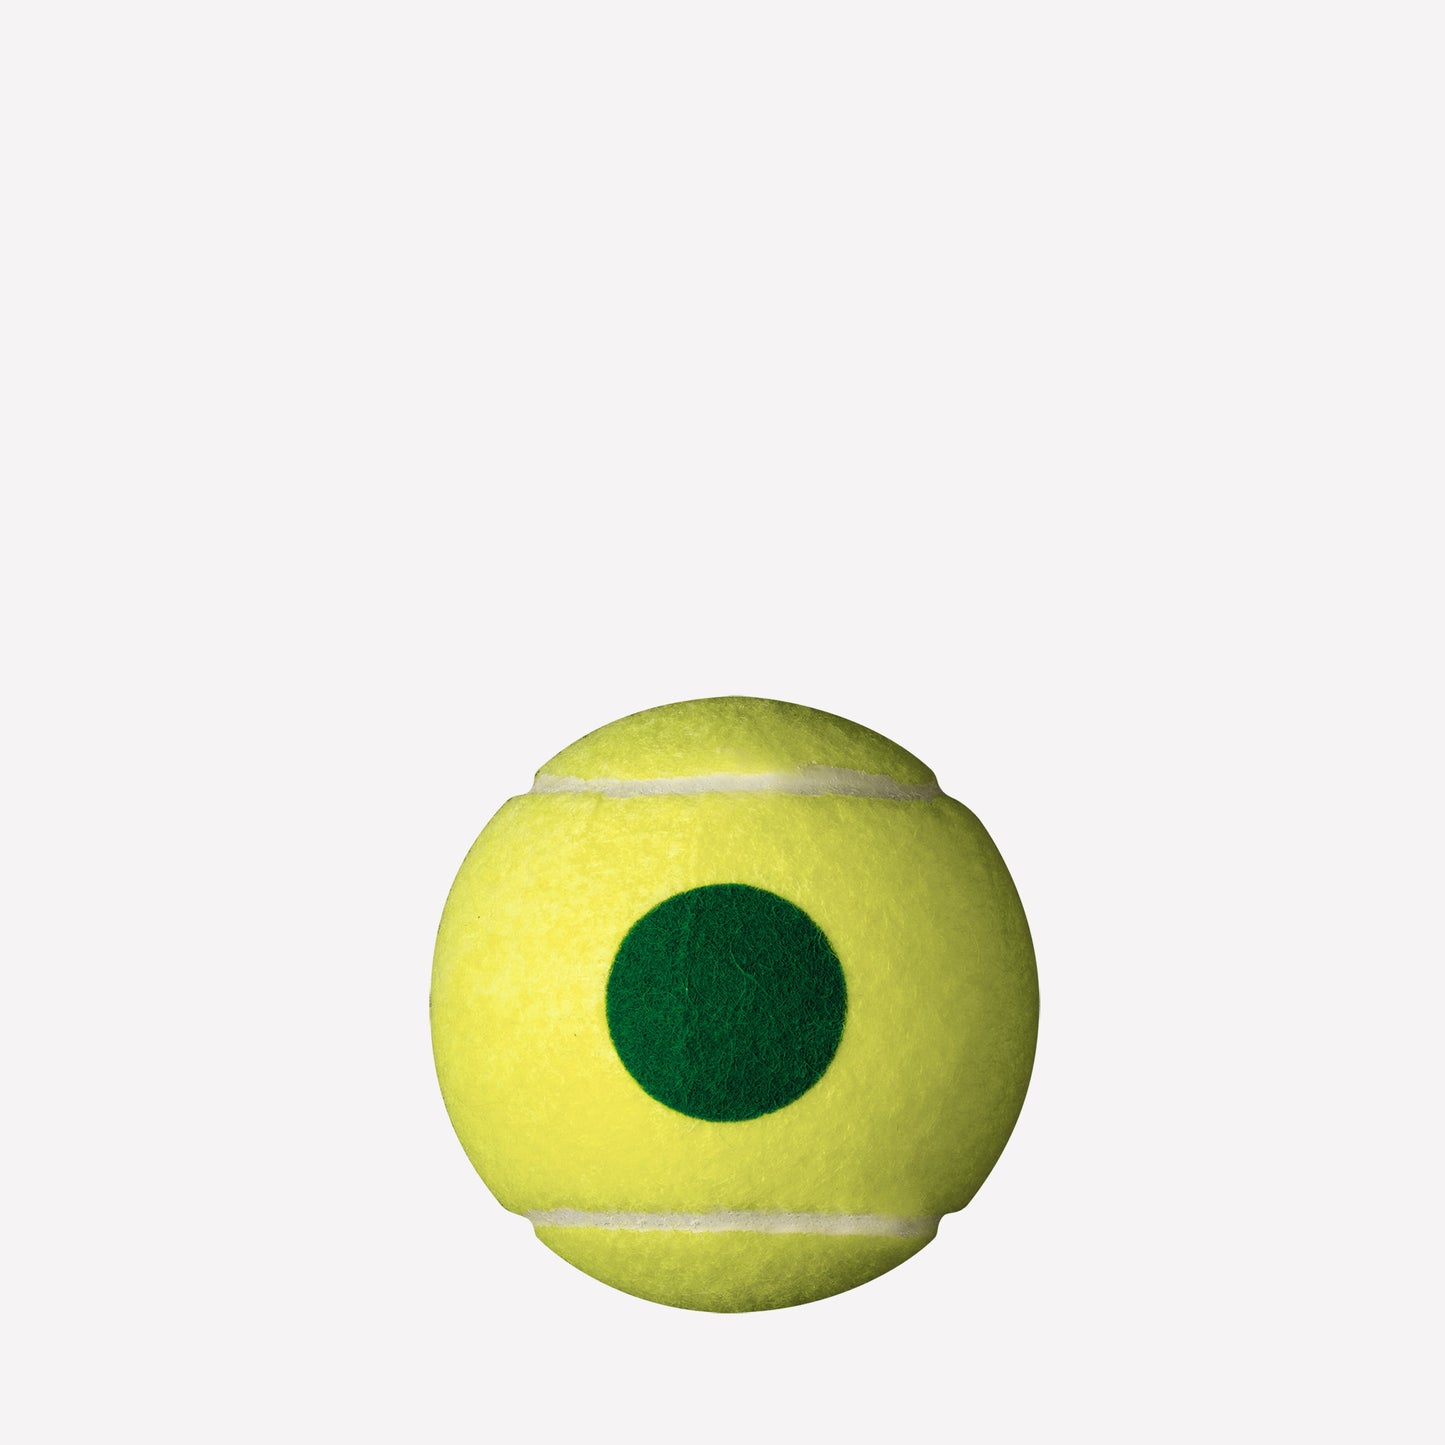 Wilson Starter Green 4 Tennis Balls 2